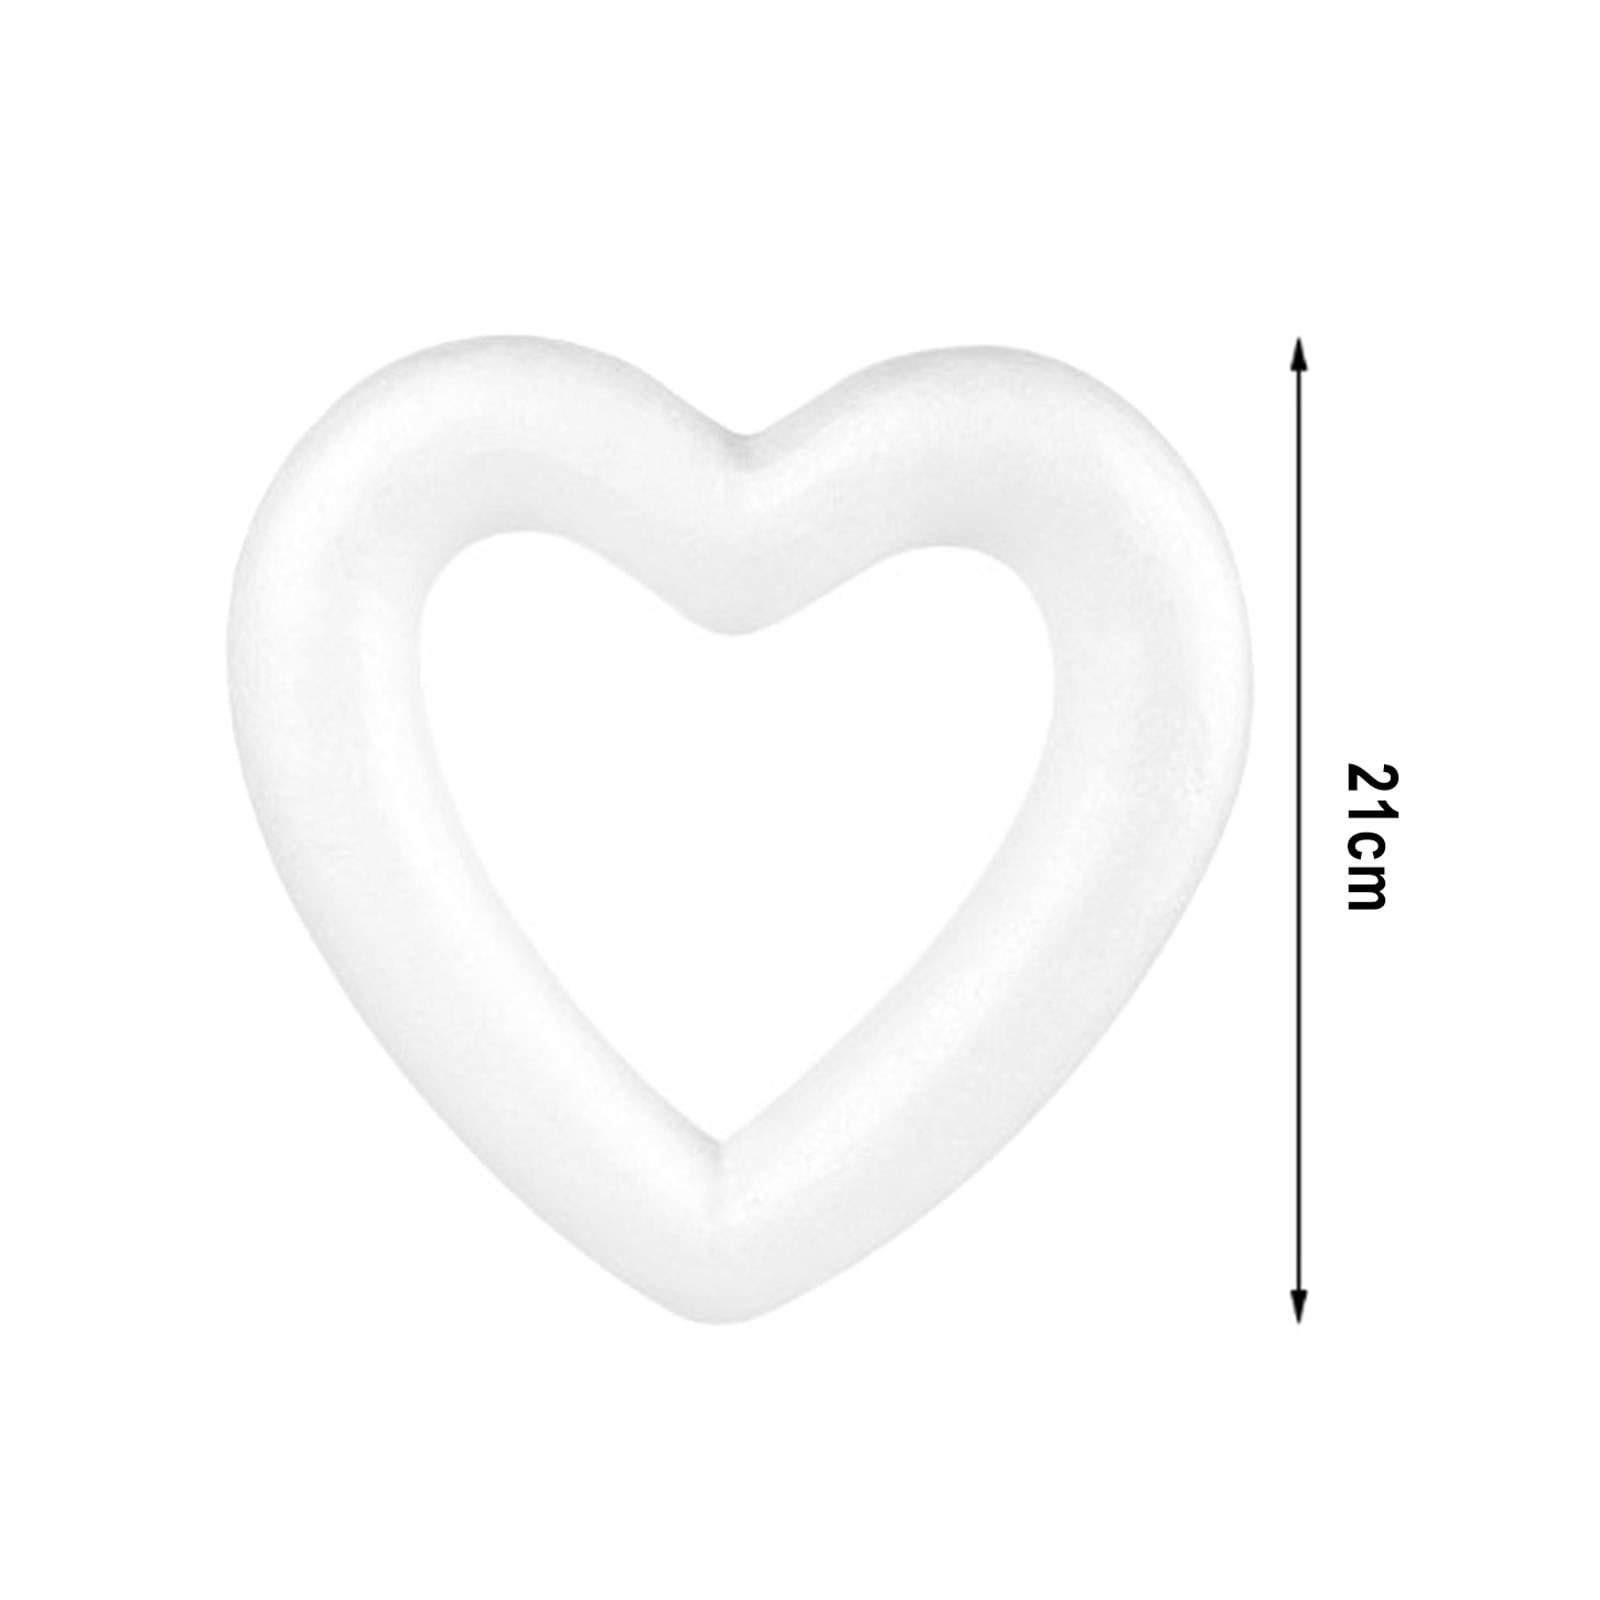  Didiseaon 40 Pcs Love Bubble Heart Craft Foam Craft Foam Heart  Wreath Valentine Wreath Form Heart Shape Foam for Crafts Wreath Making Form  Foam Hearts Foam Shapes Wedding Foam Block White